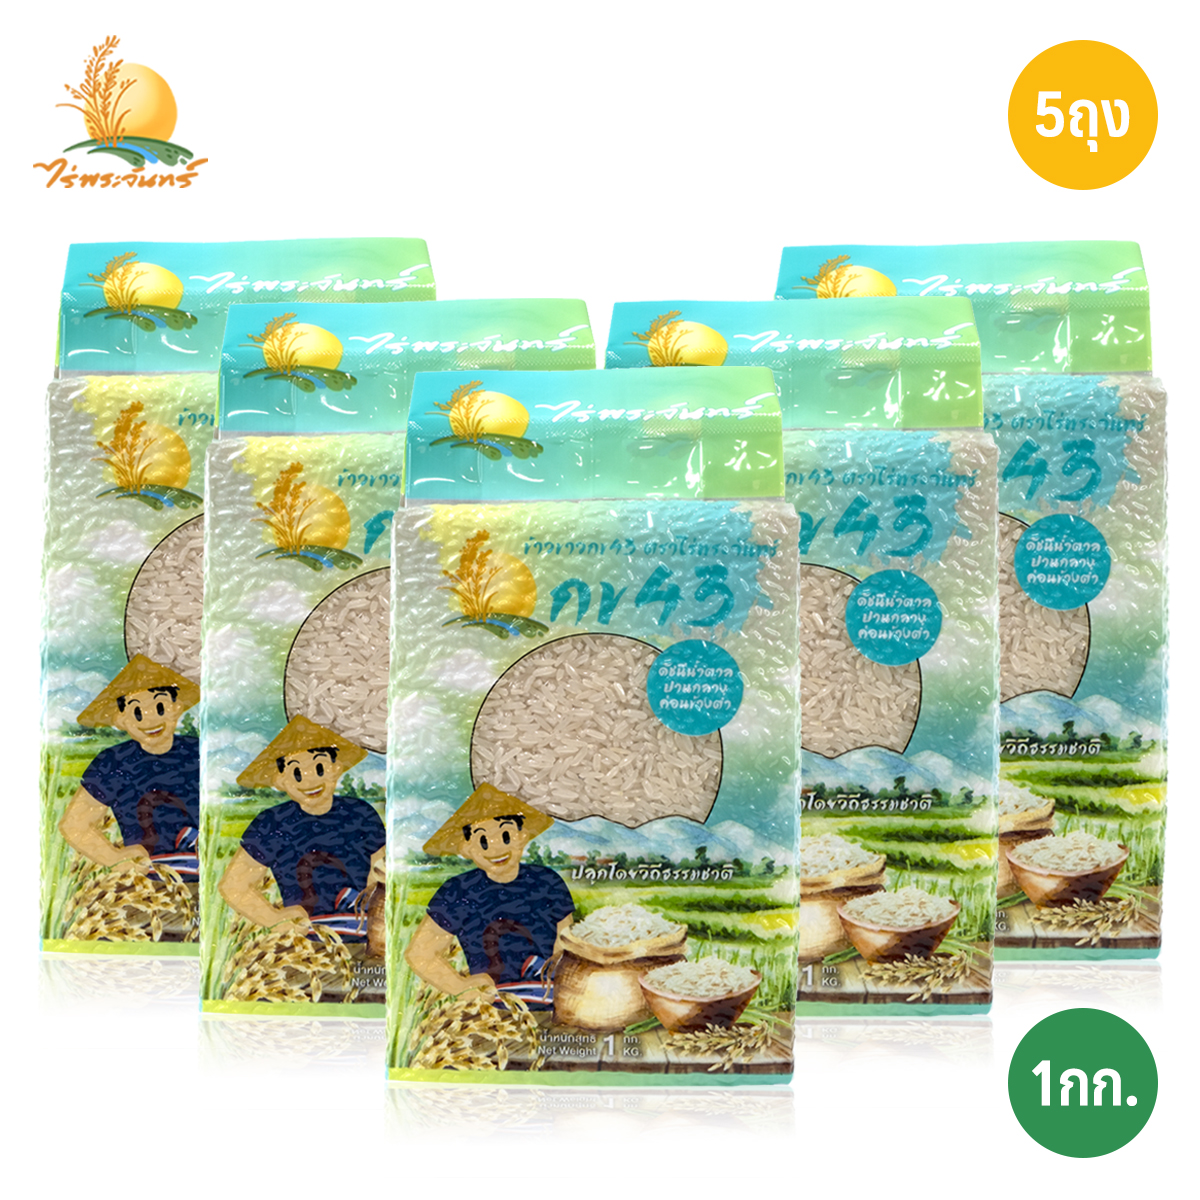 ข้าวขาว กข43 แท้ 100%  บรรจุ 1กก. x 5ถุง ตราไร่พระจันทร์ moonricefarm ข้าวกข43 (ดัชนีน้ำตาลต่ำ 泰国大米品种编号43 / RD43 Rice varietie Low GI) ปลูกโดยวิถีธรรมชา